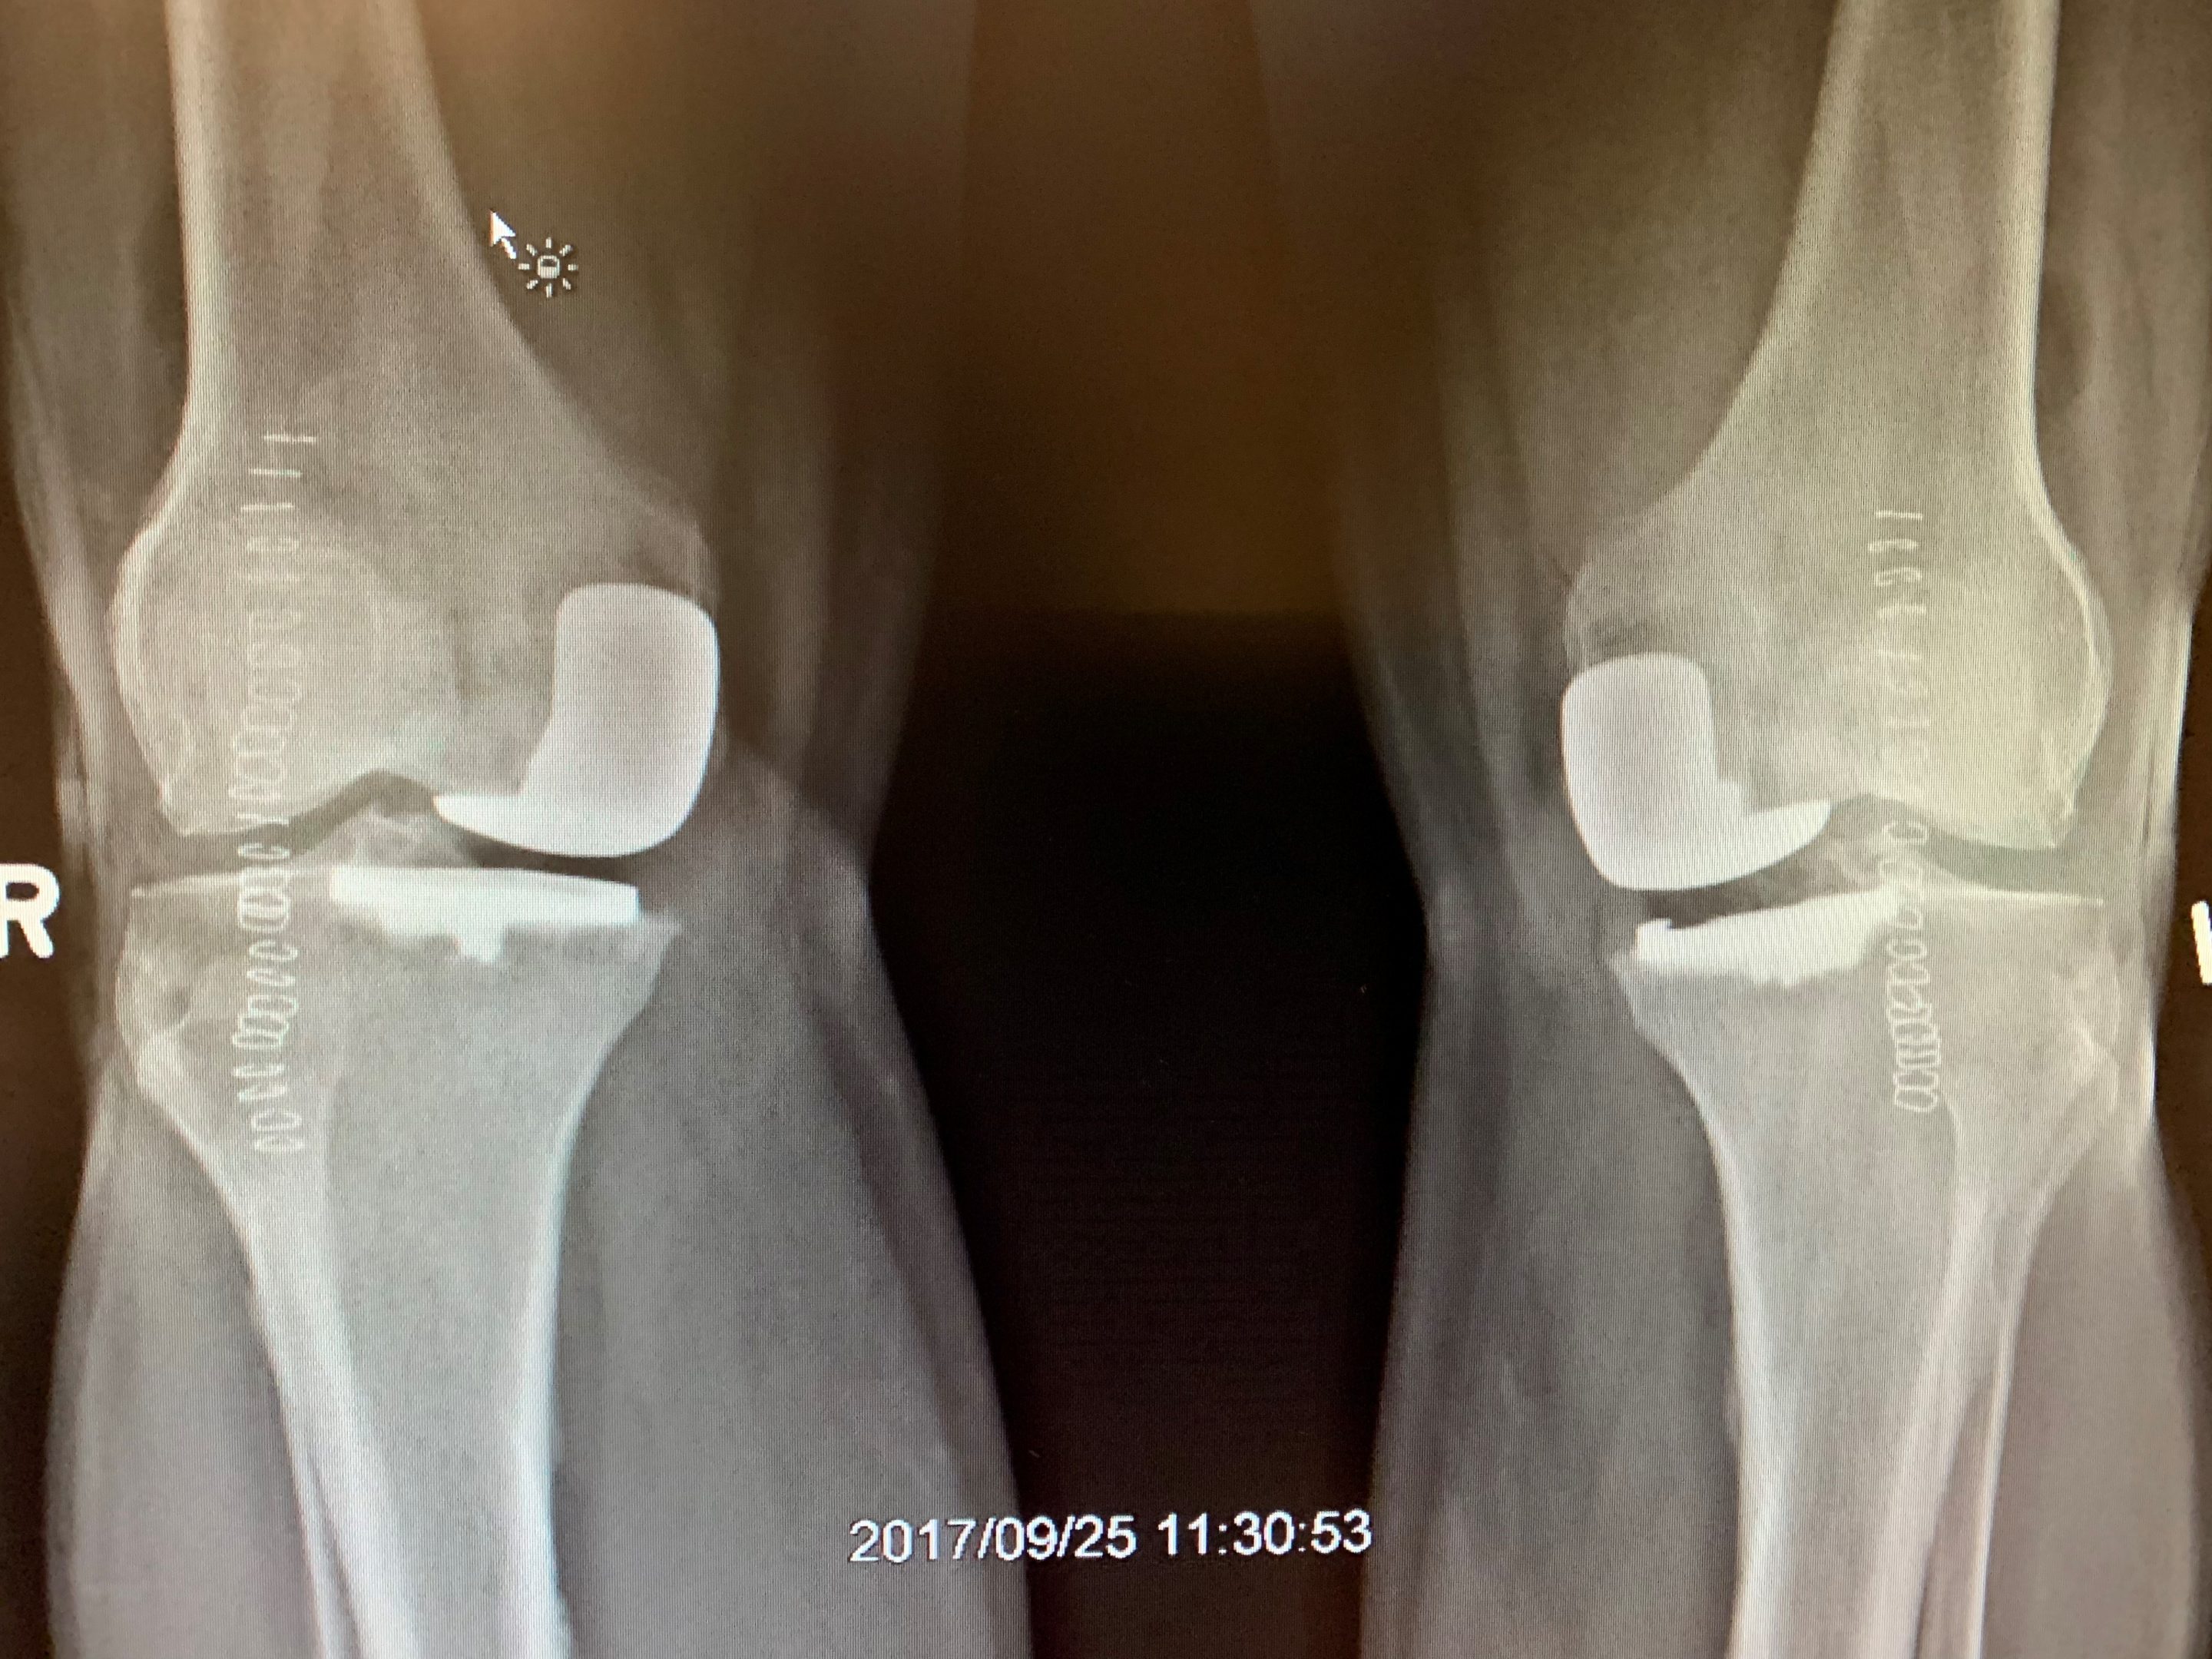 Reemplazo bilateral simultáneo de rodilla unicondilar en un hombre de 67 años